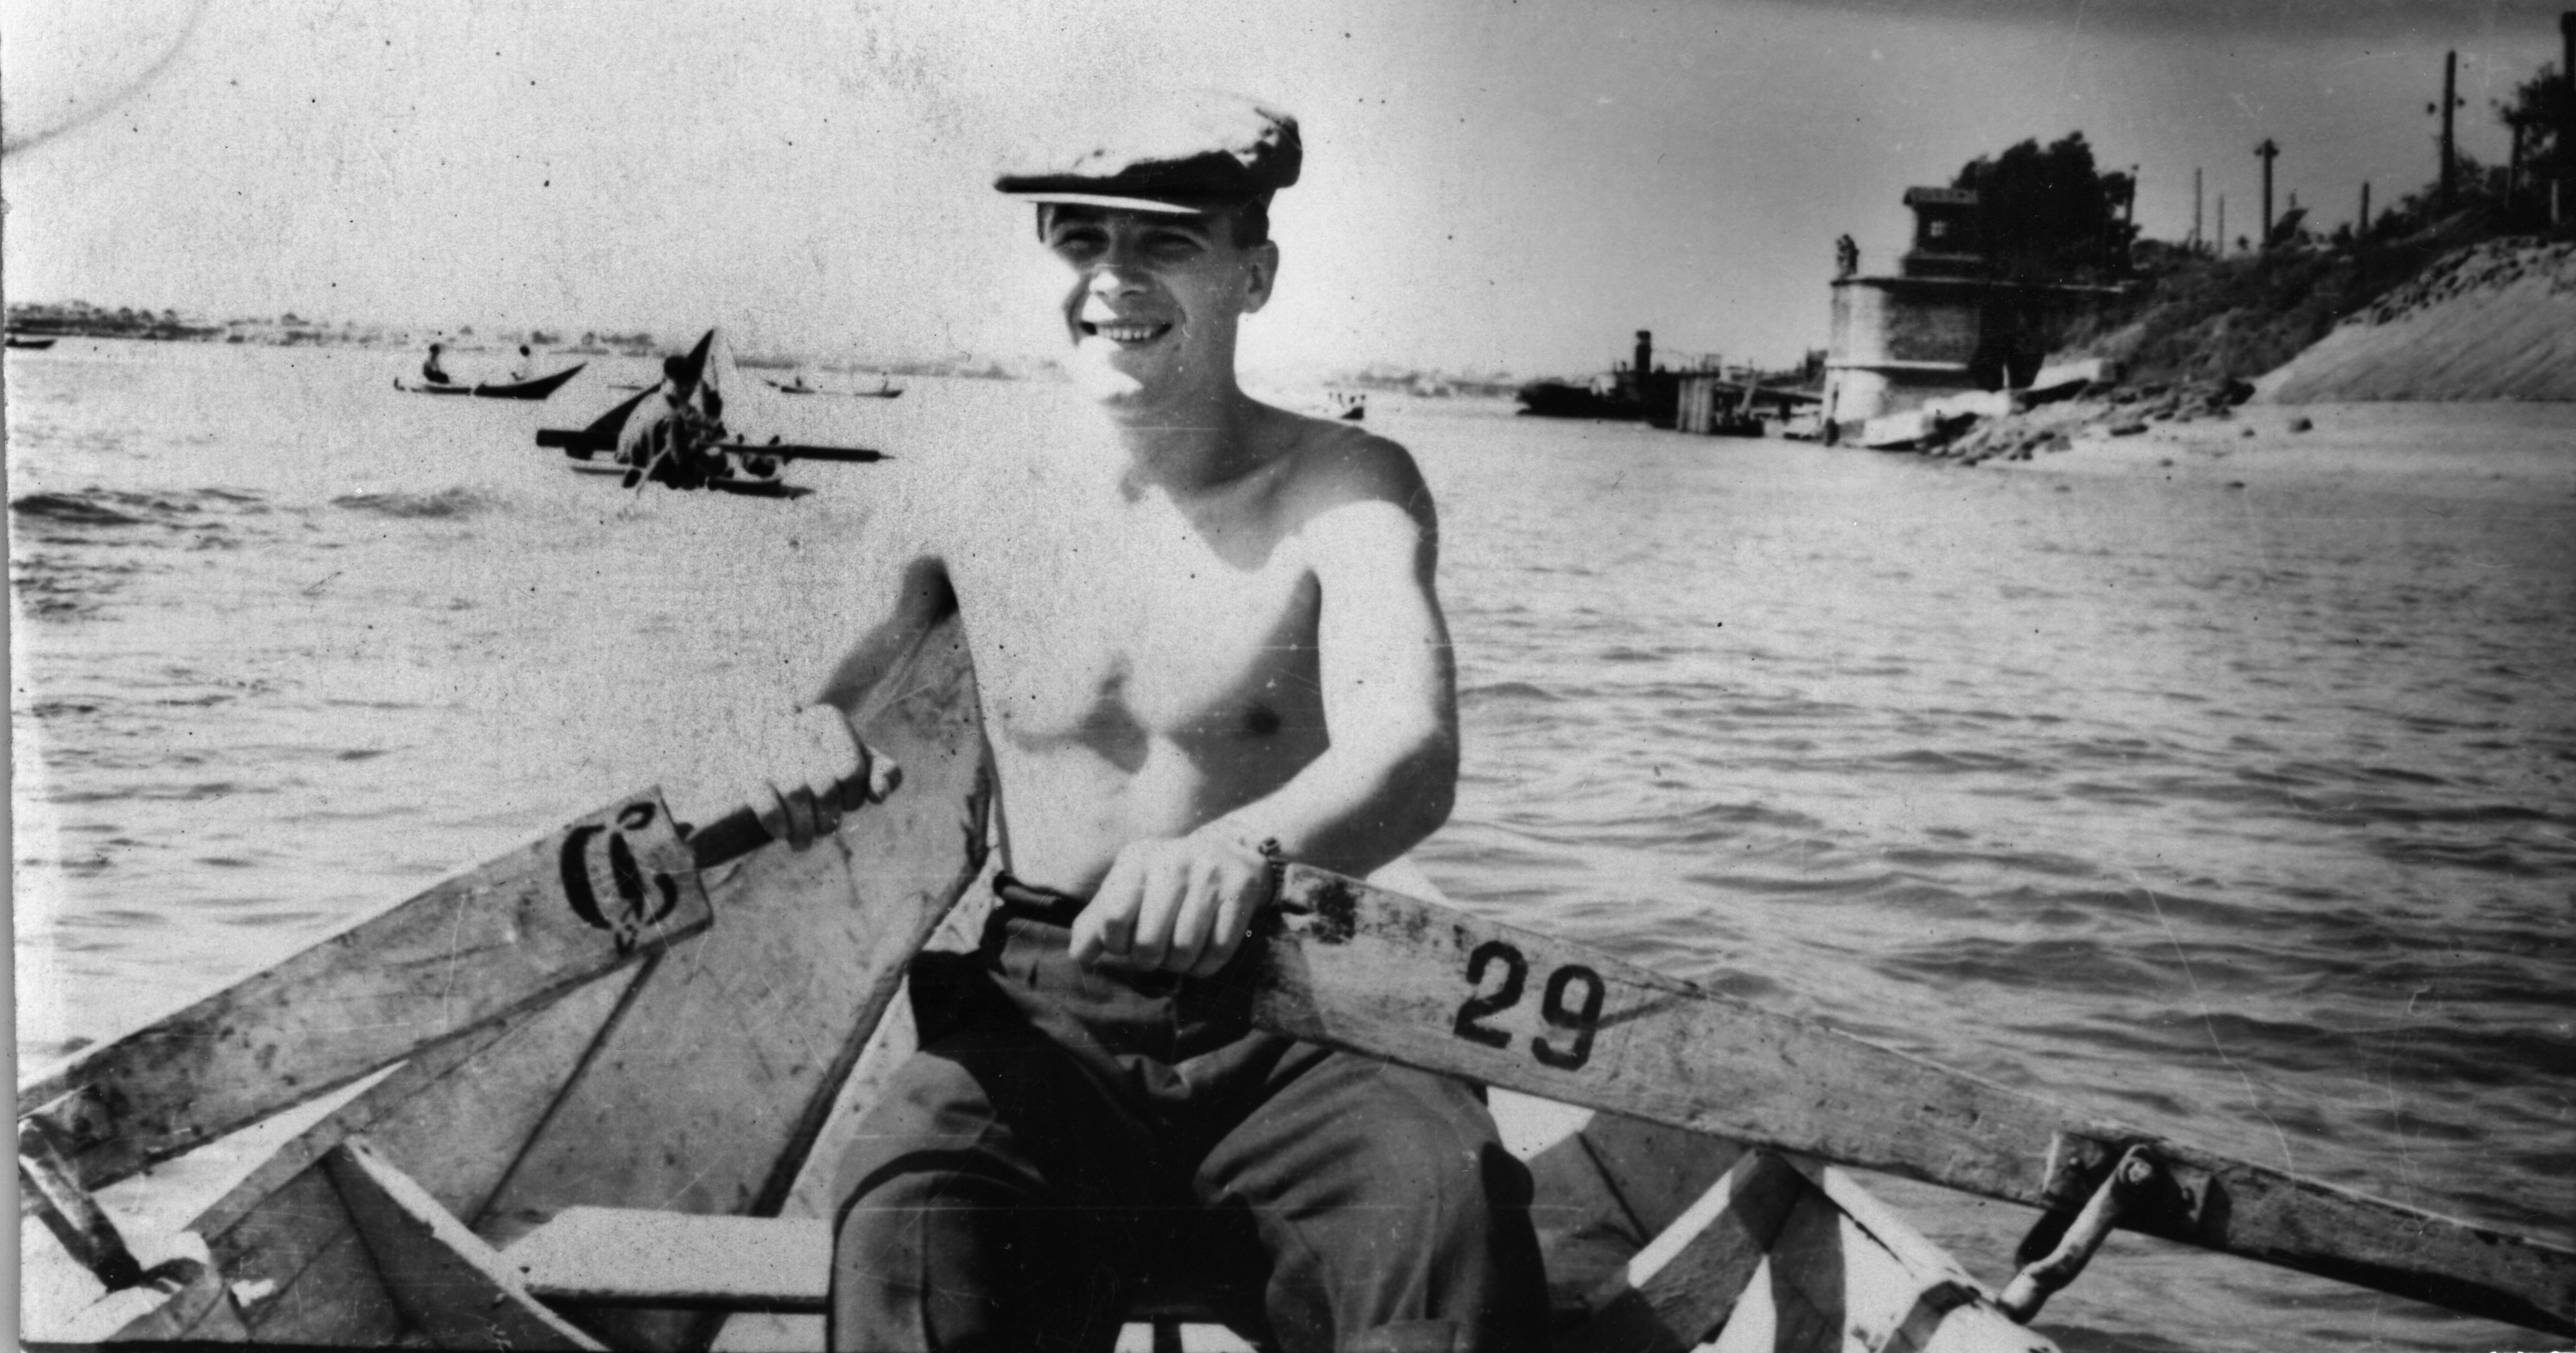 В 1955 году лодку можно было взять напрокат и поплавать на Иртыше, как сделал этот улыбчивый молодой человек